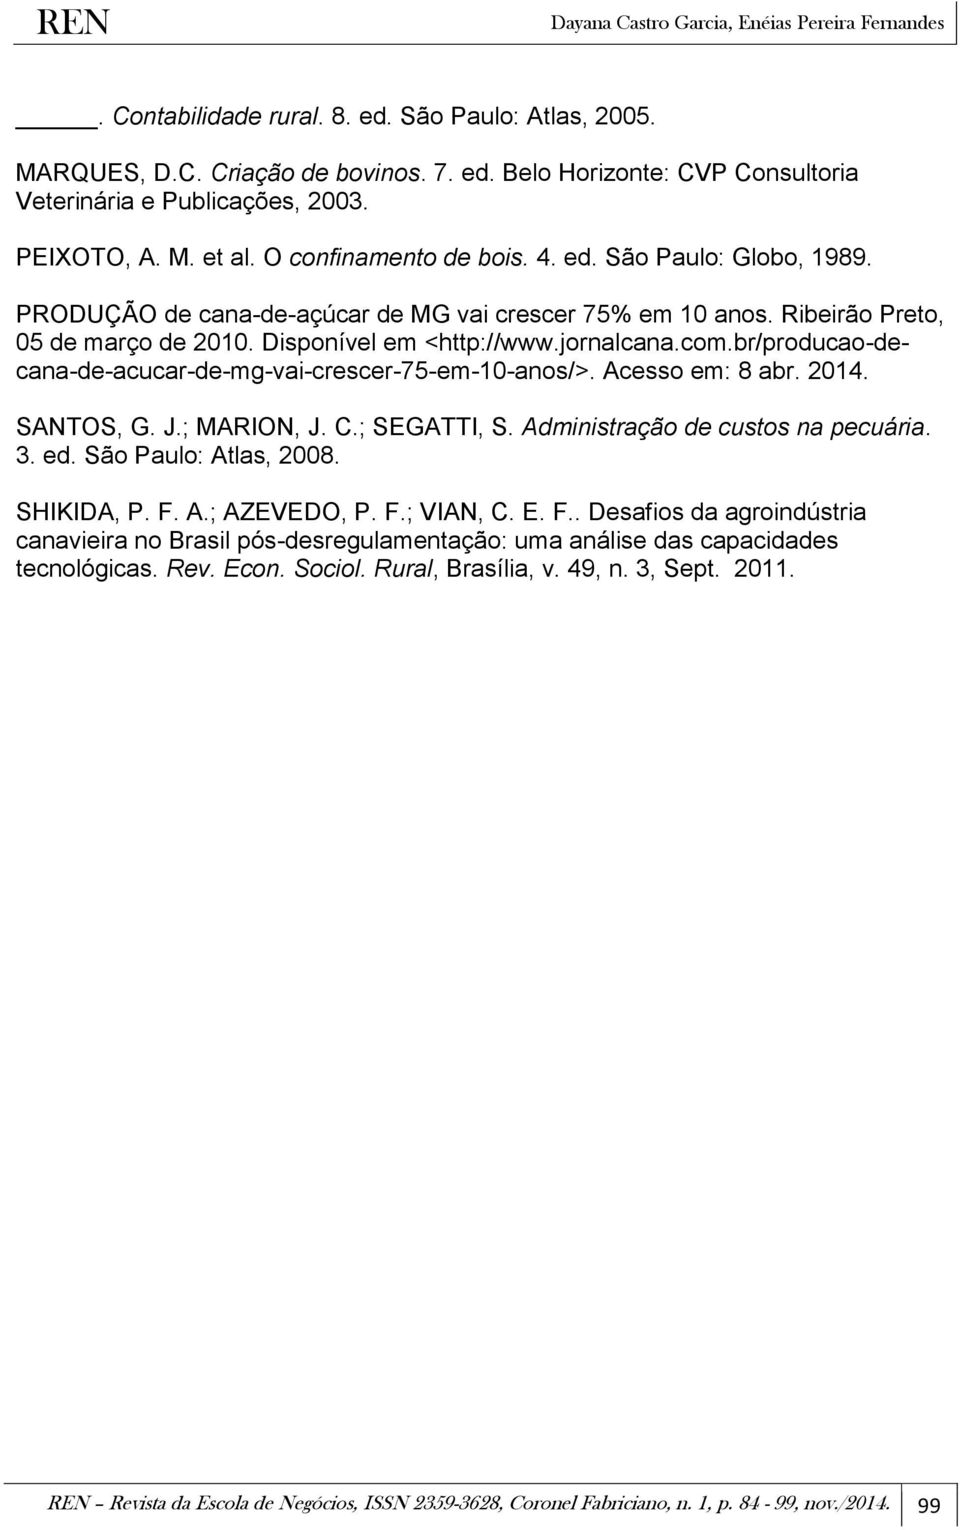 br/producao-decana-de-acucar-de-mg-vai-crescer-75-em-10-anos/>. Acesso em: 8 abr. 2014. SANTOS, G. J.; MARION, J. C.; SEGATTI, S. Administração de custos na pecuária. 3. ed. São Paulo: Atlas, 2008.